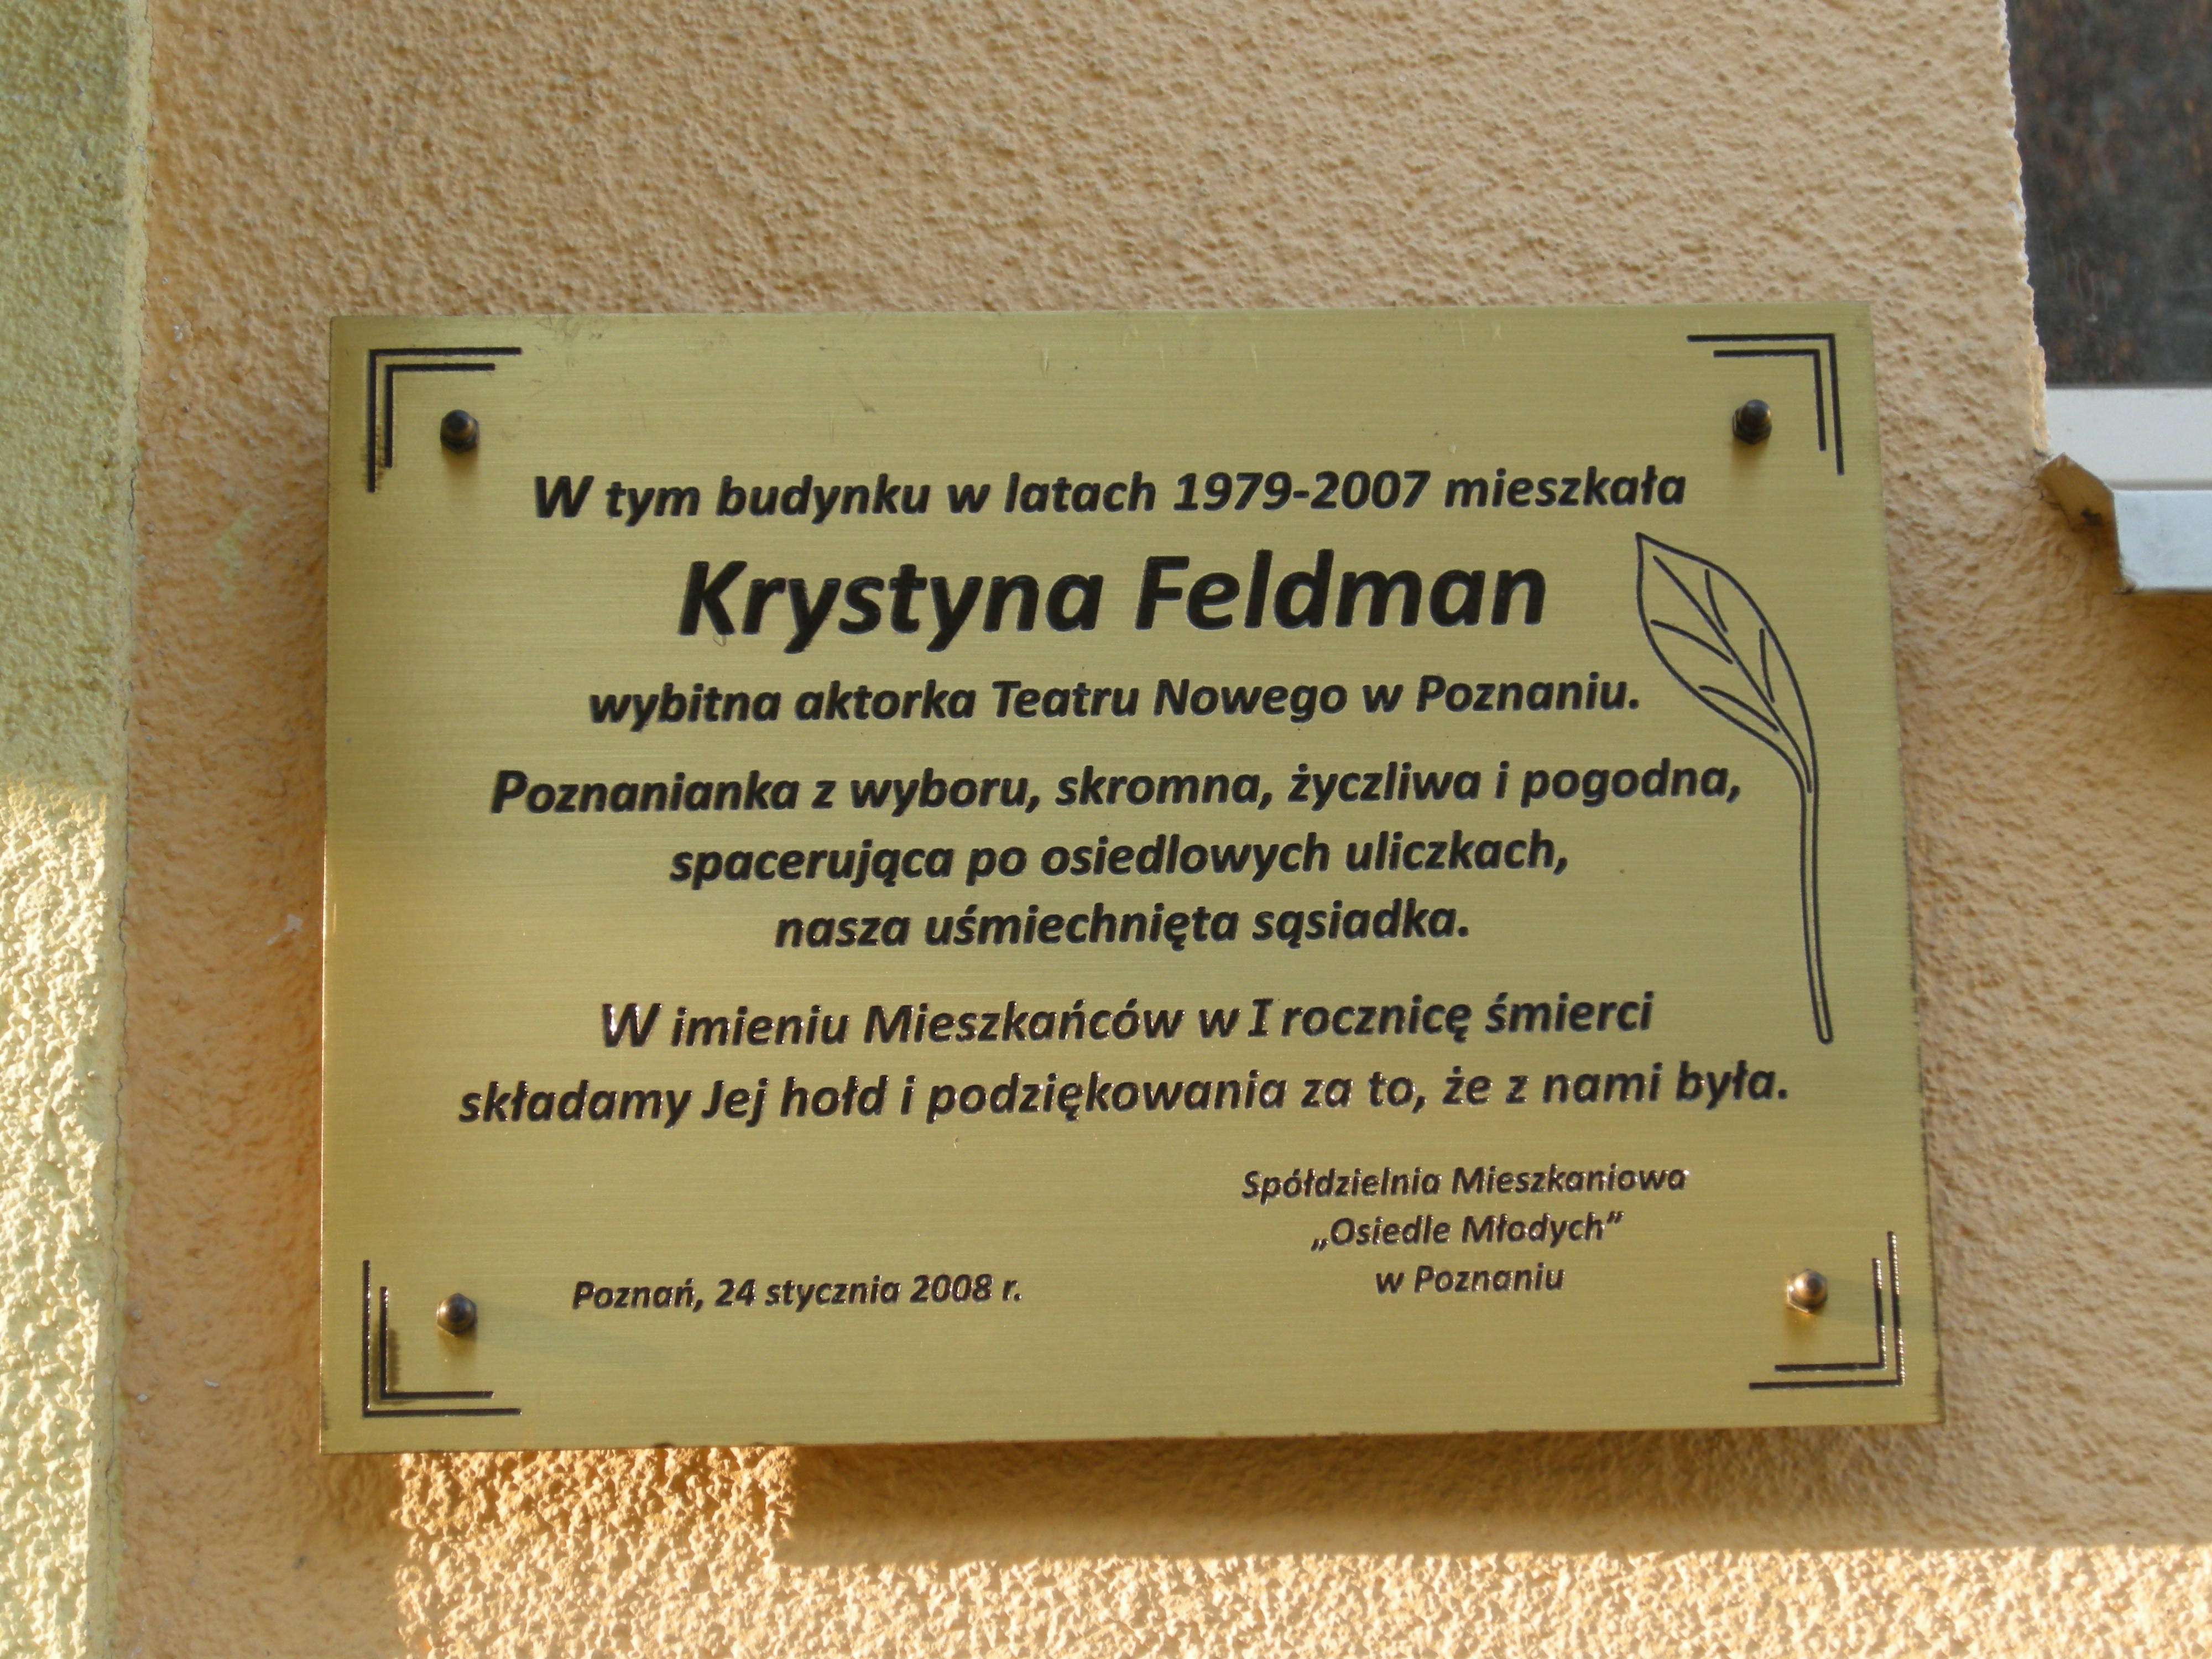 Wikipedia, 2009 in Pozna, Krystyna Feldman, Media with locations, Osiedle Armii Krajowej (Pozna), 